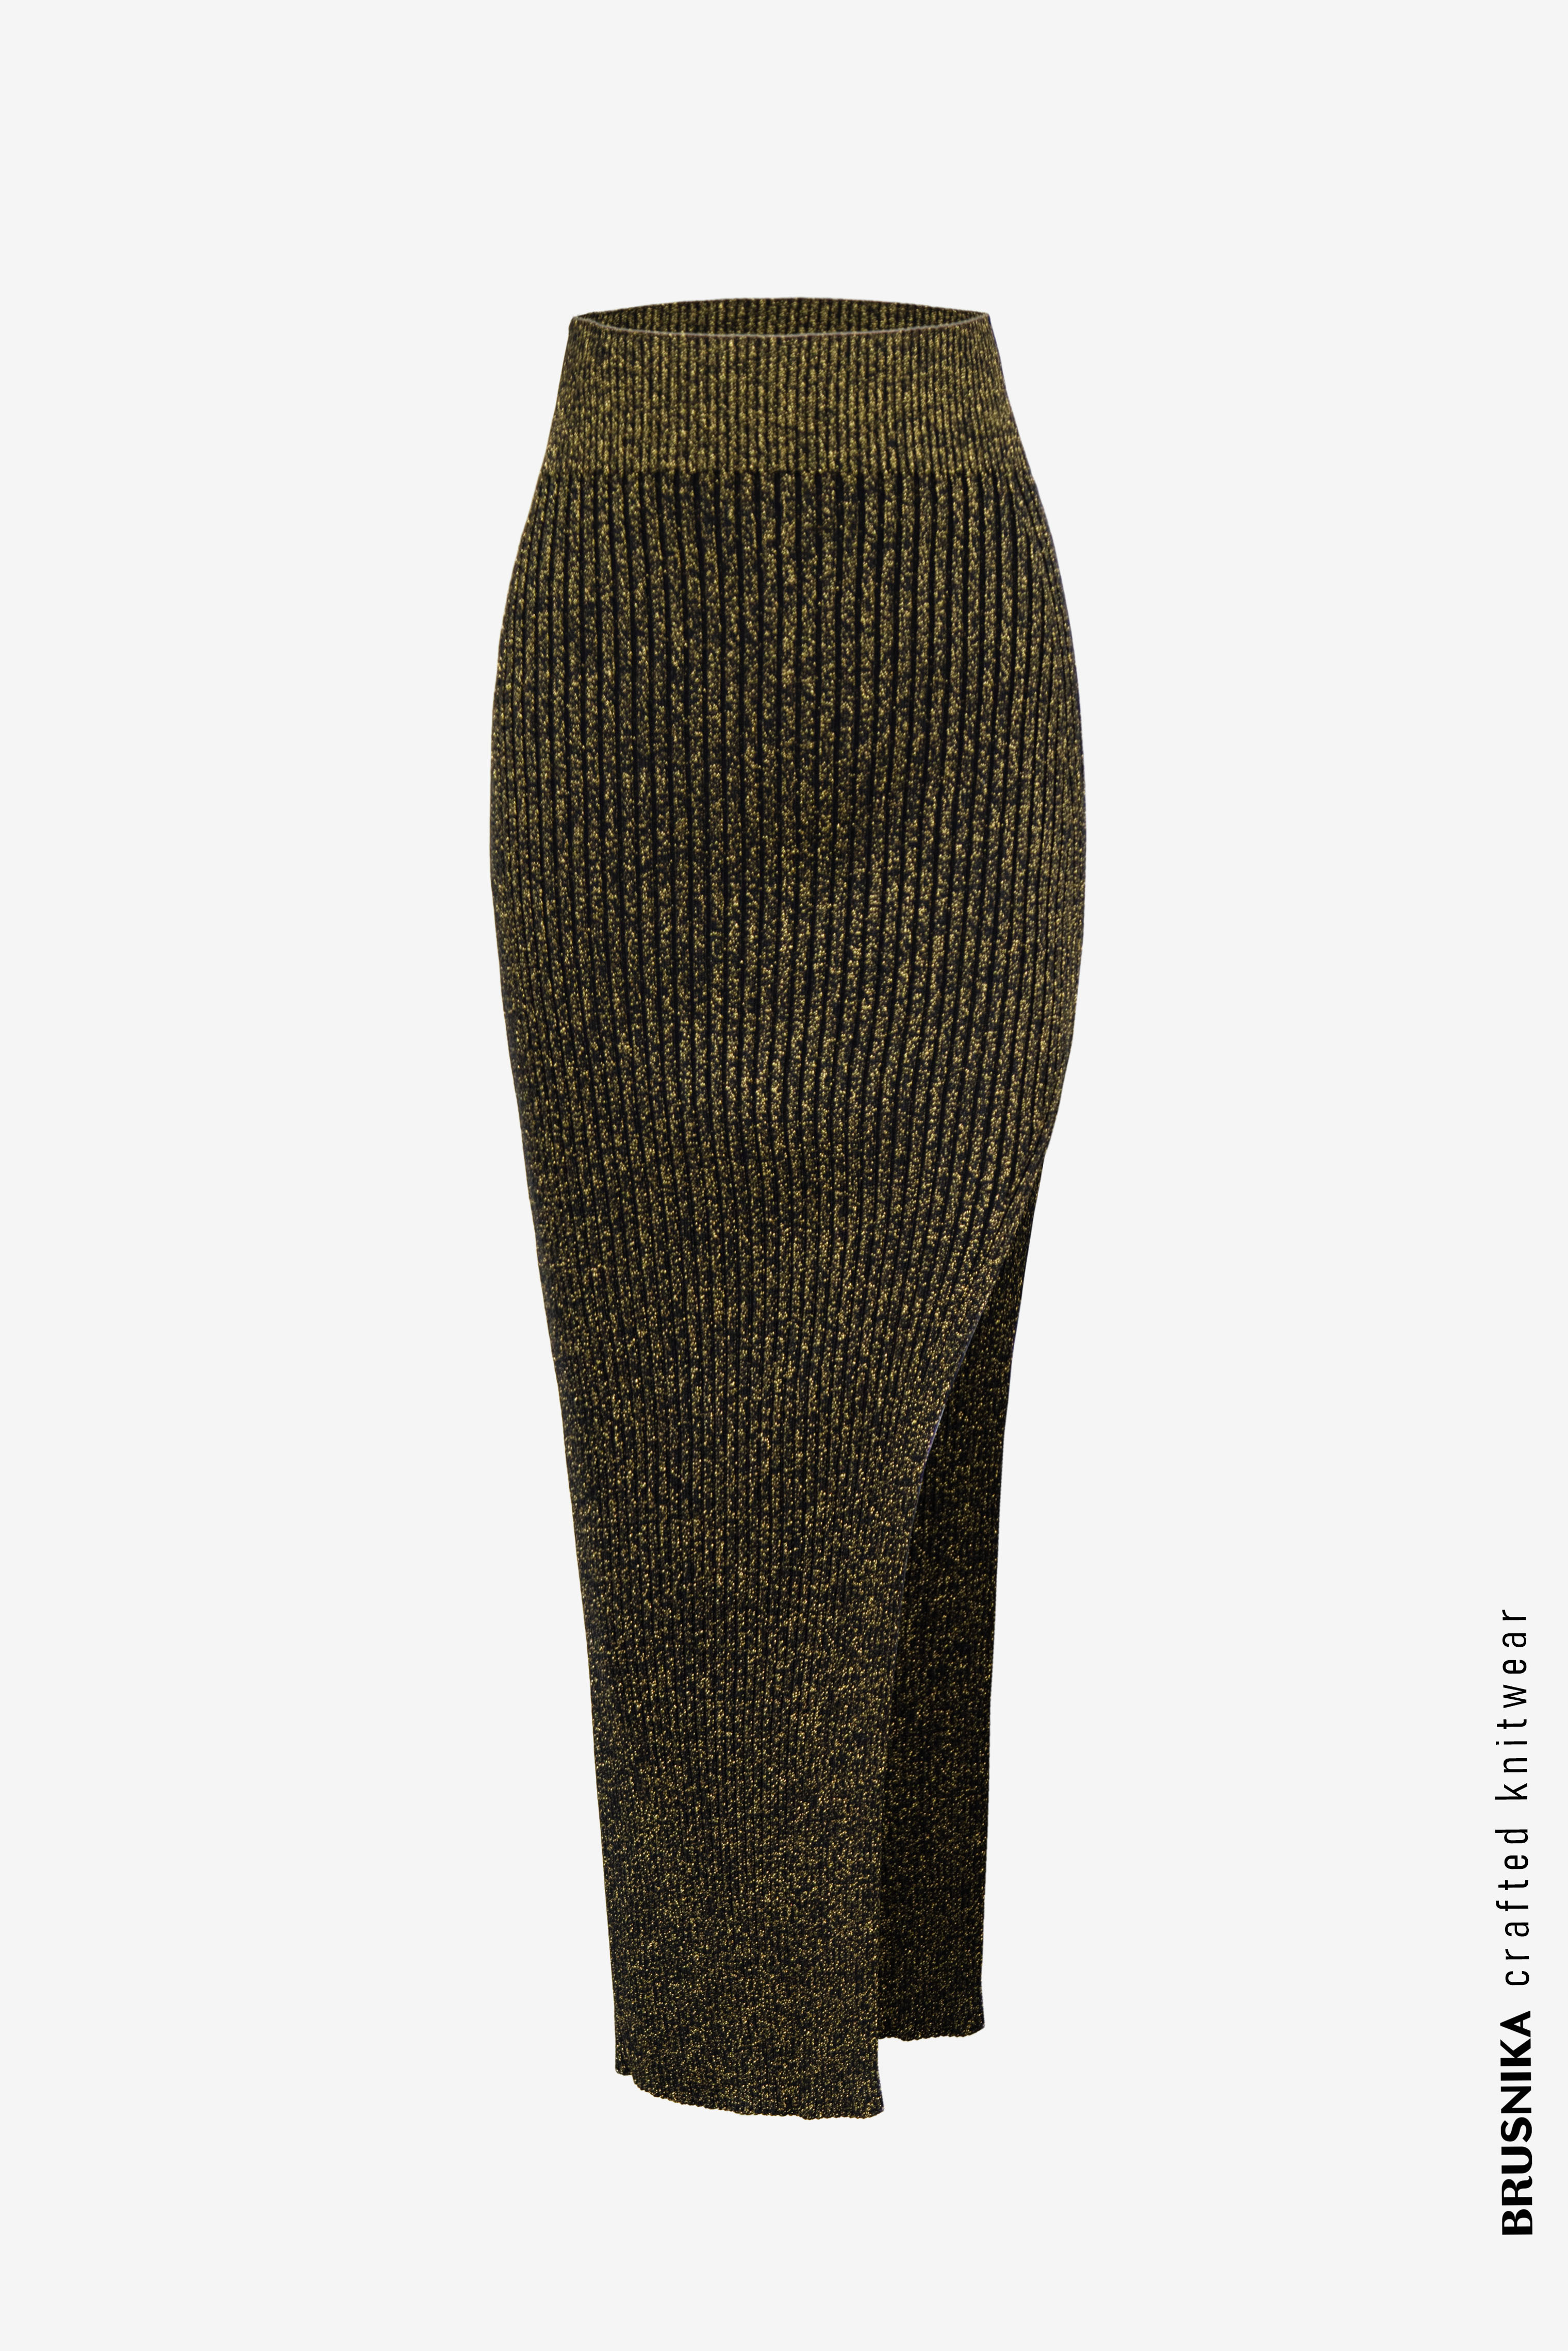 Skirt 3735-87 Black/gold from BRUSNiKA